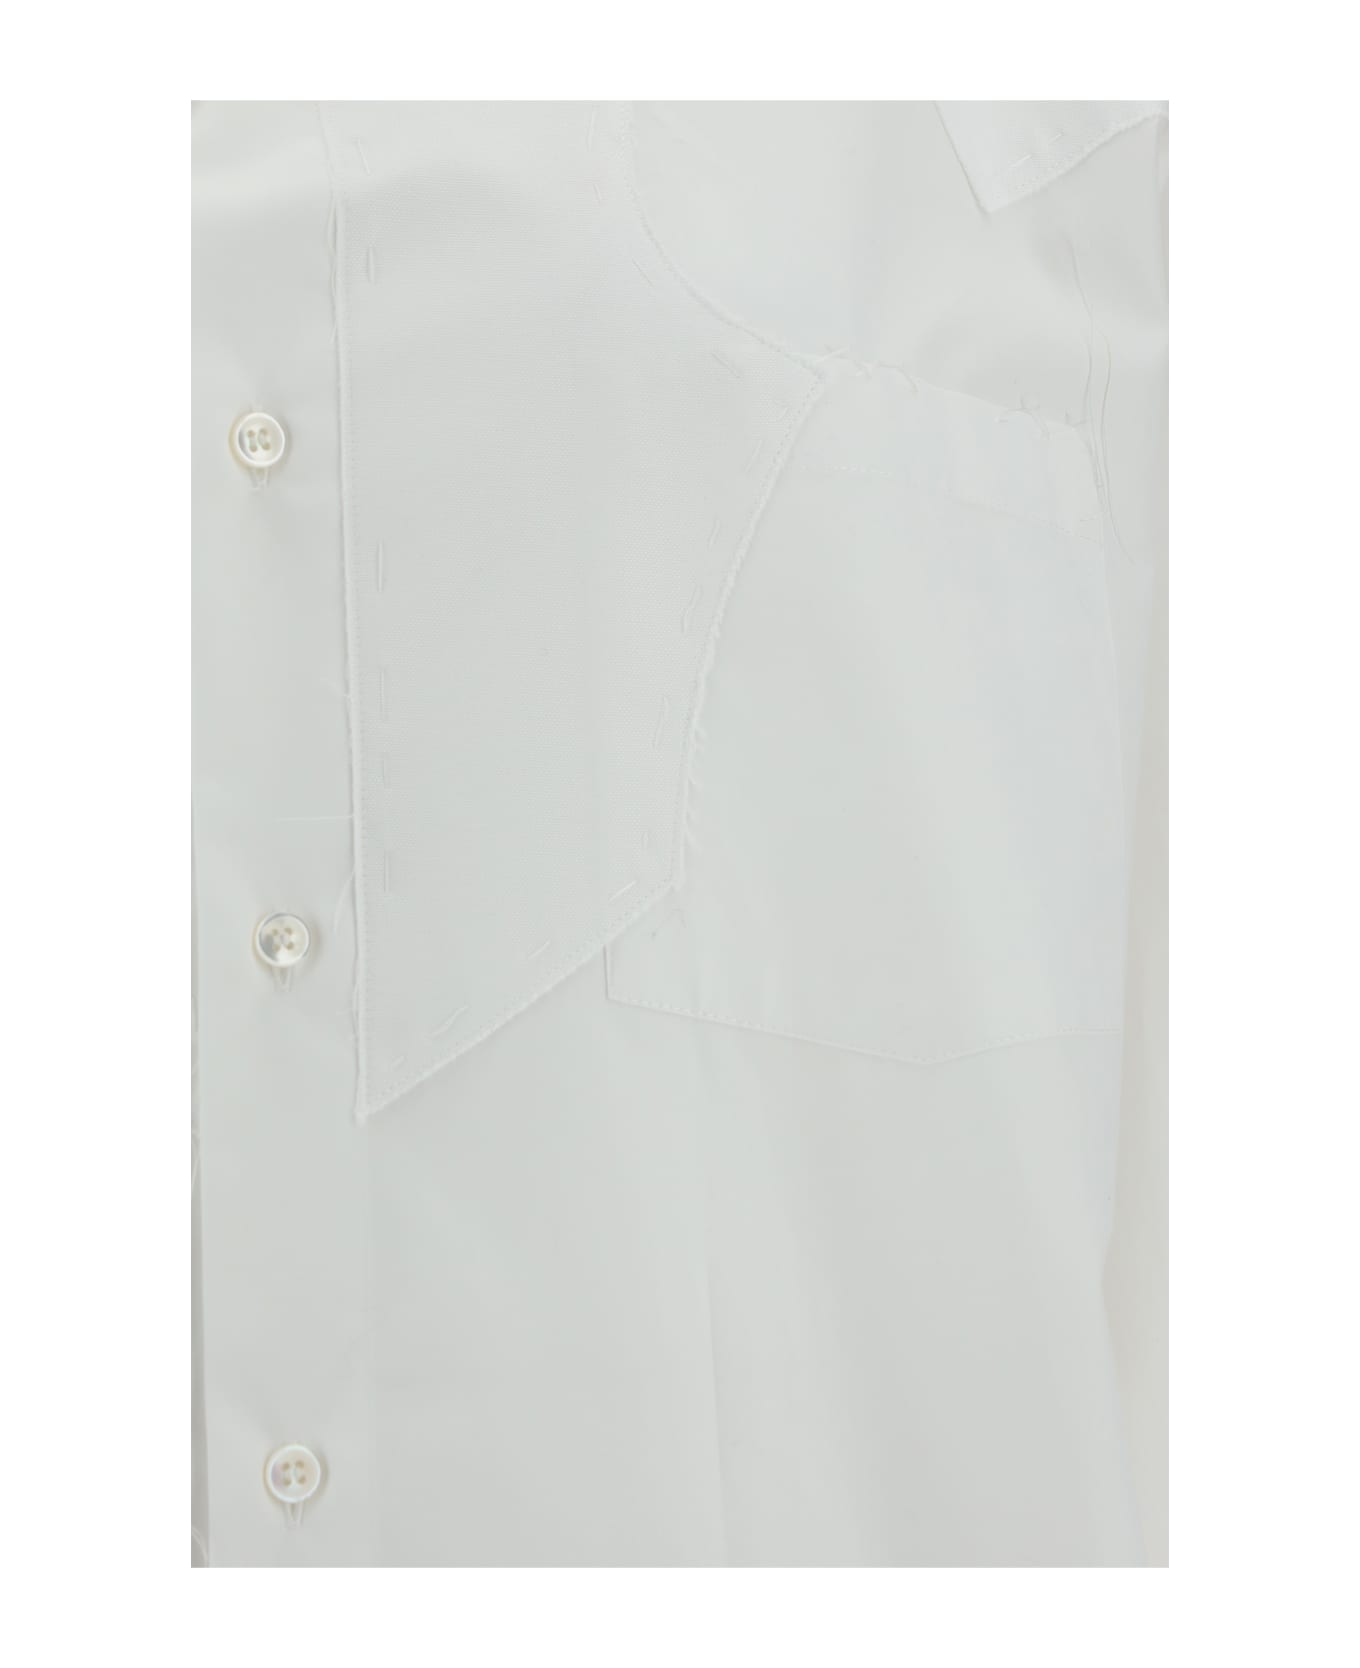 Maison Margiela Button-up Mini Shirt Dress - White シャツ